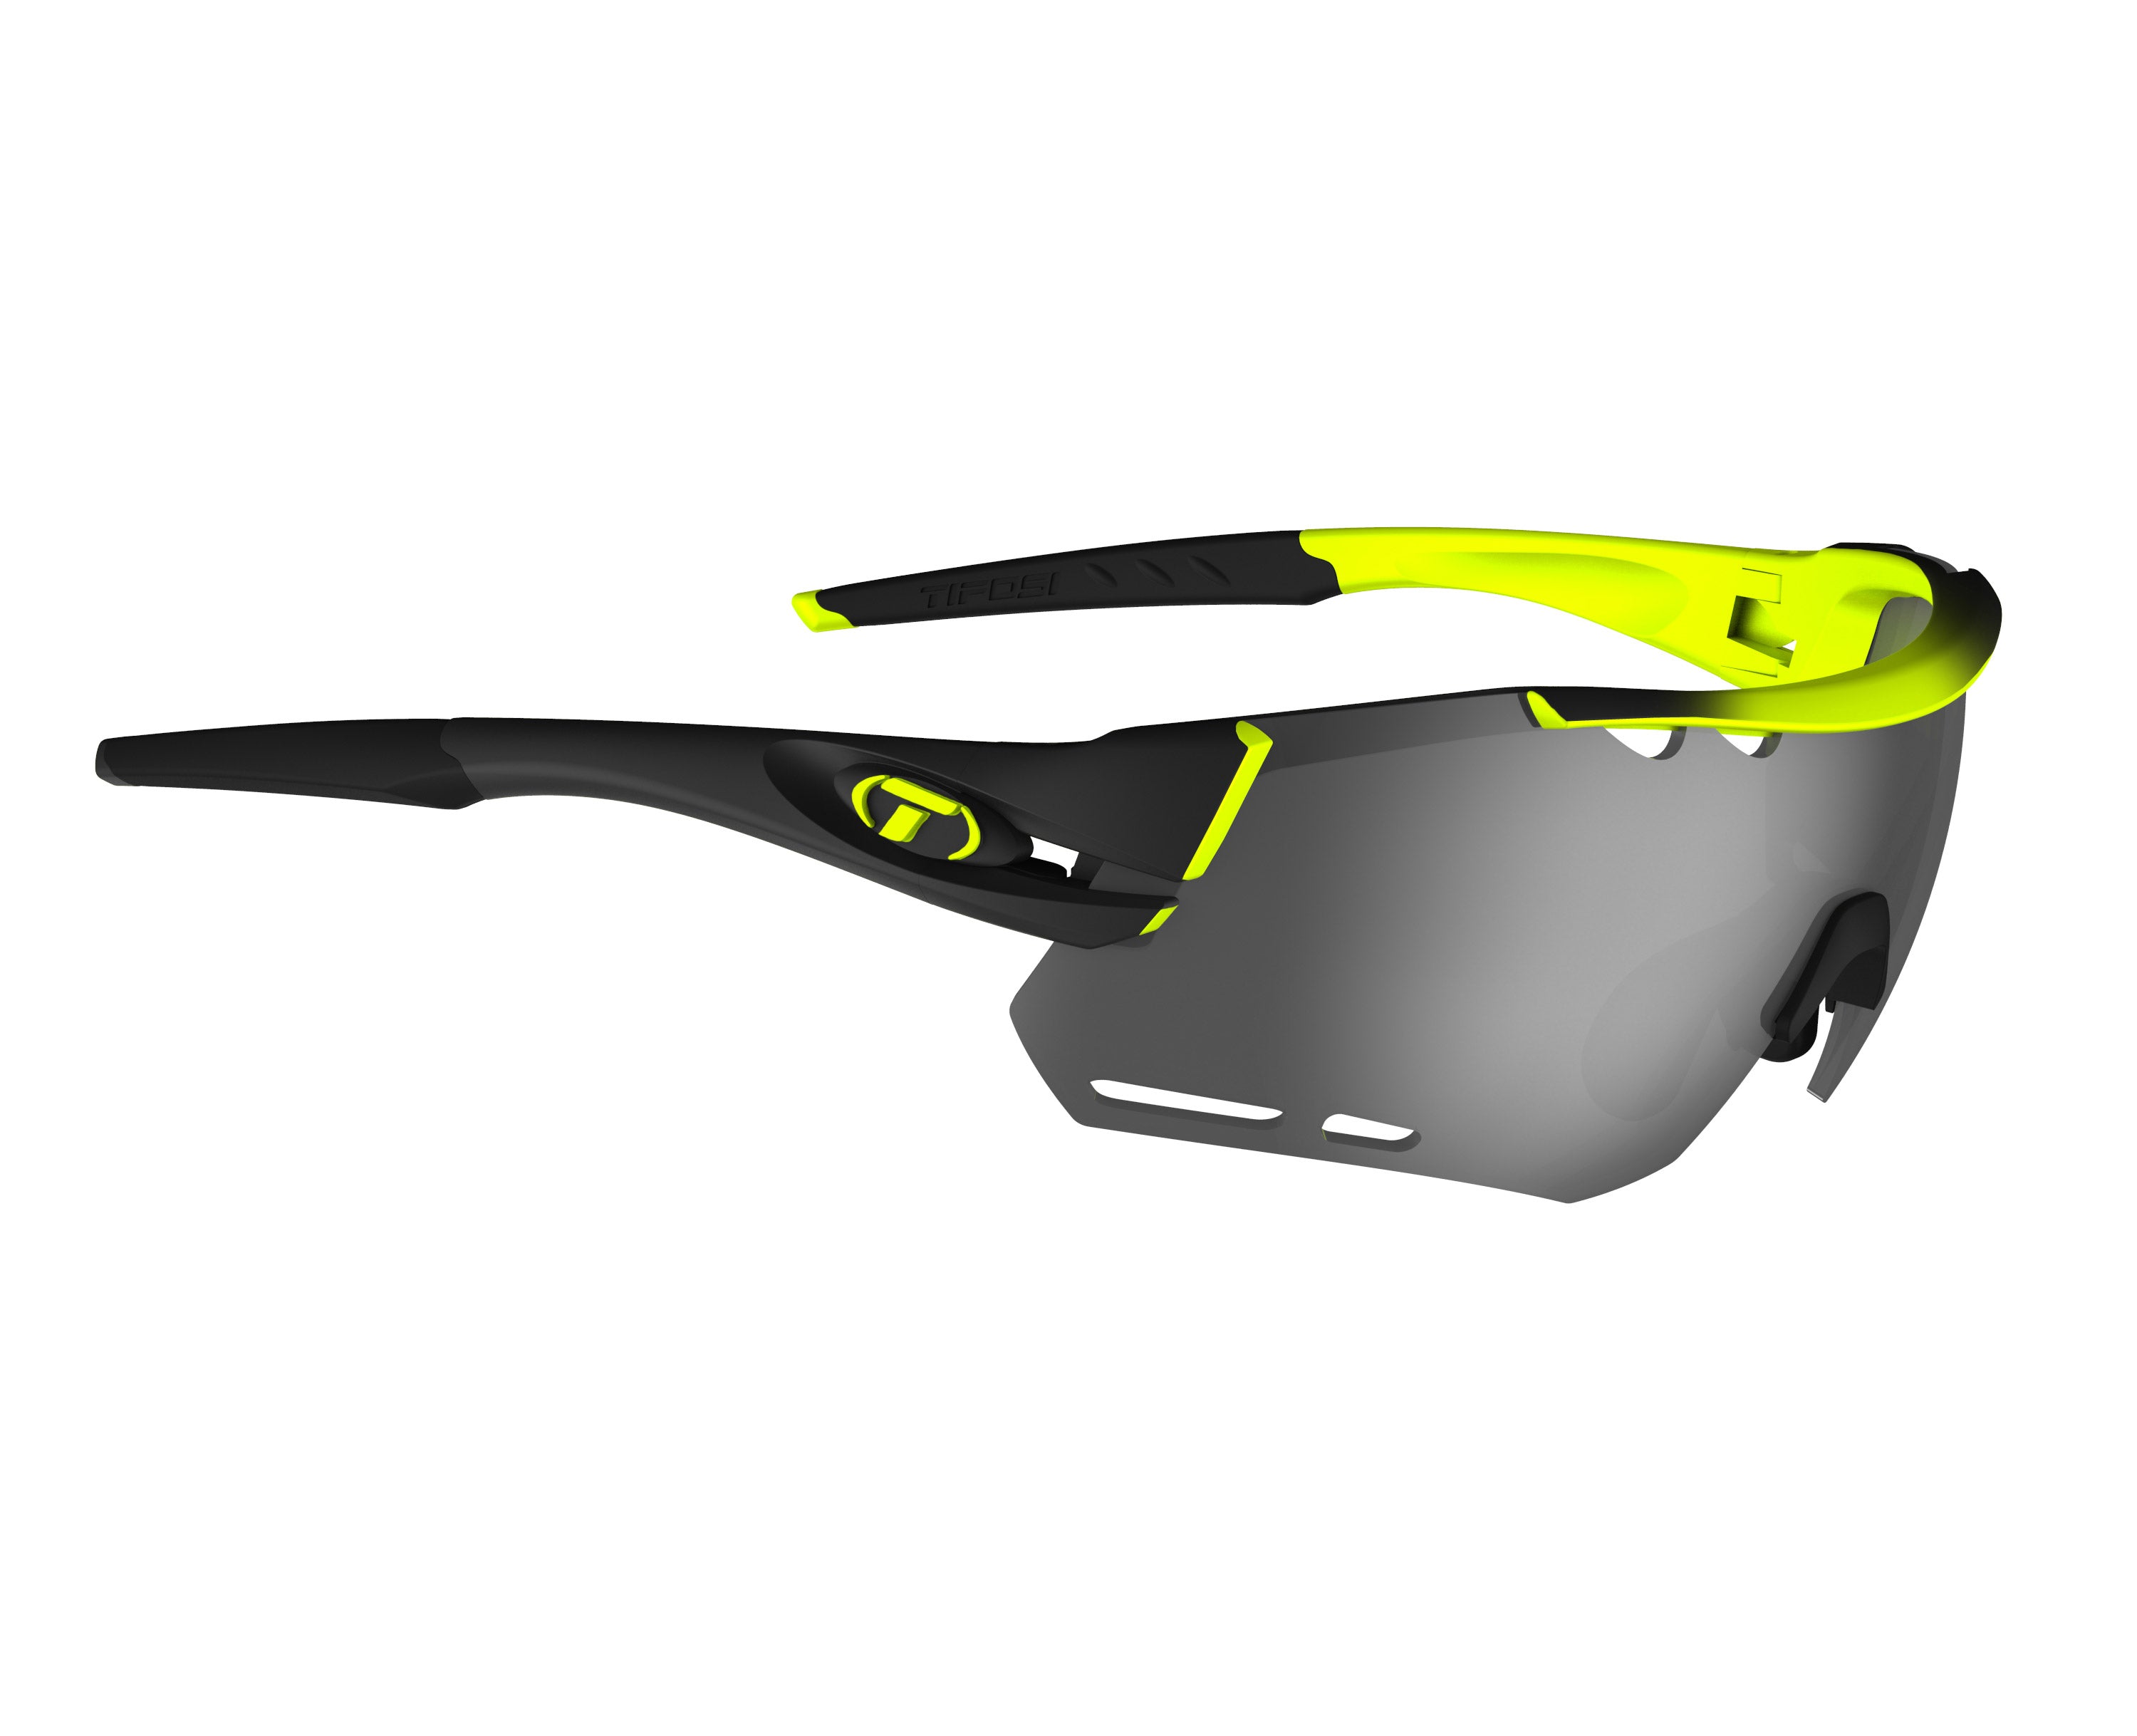 Gafas de sol TIFOSI Alliant Race Neon (incluye varias lentes)